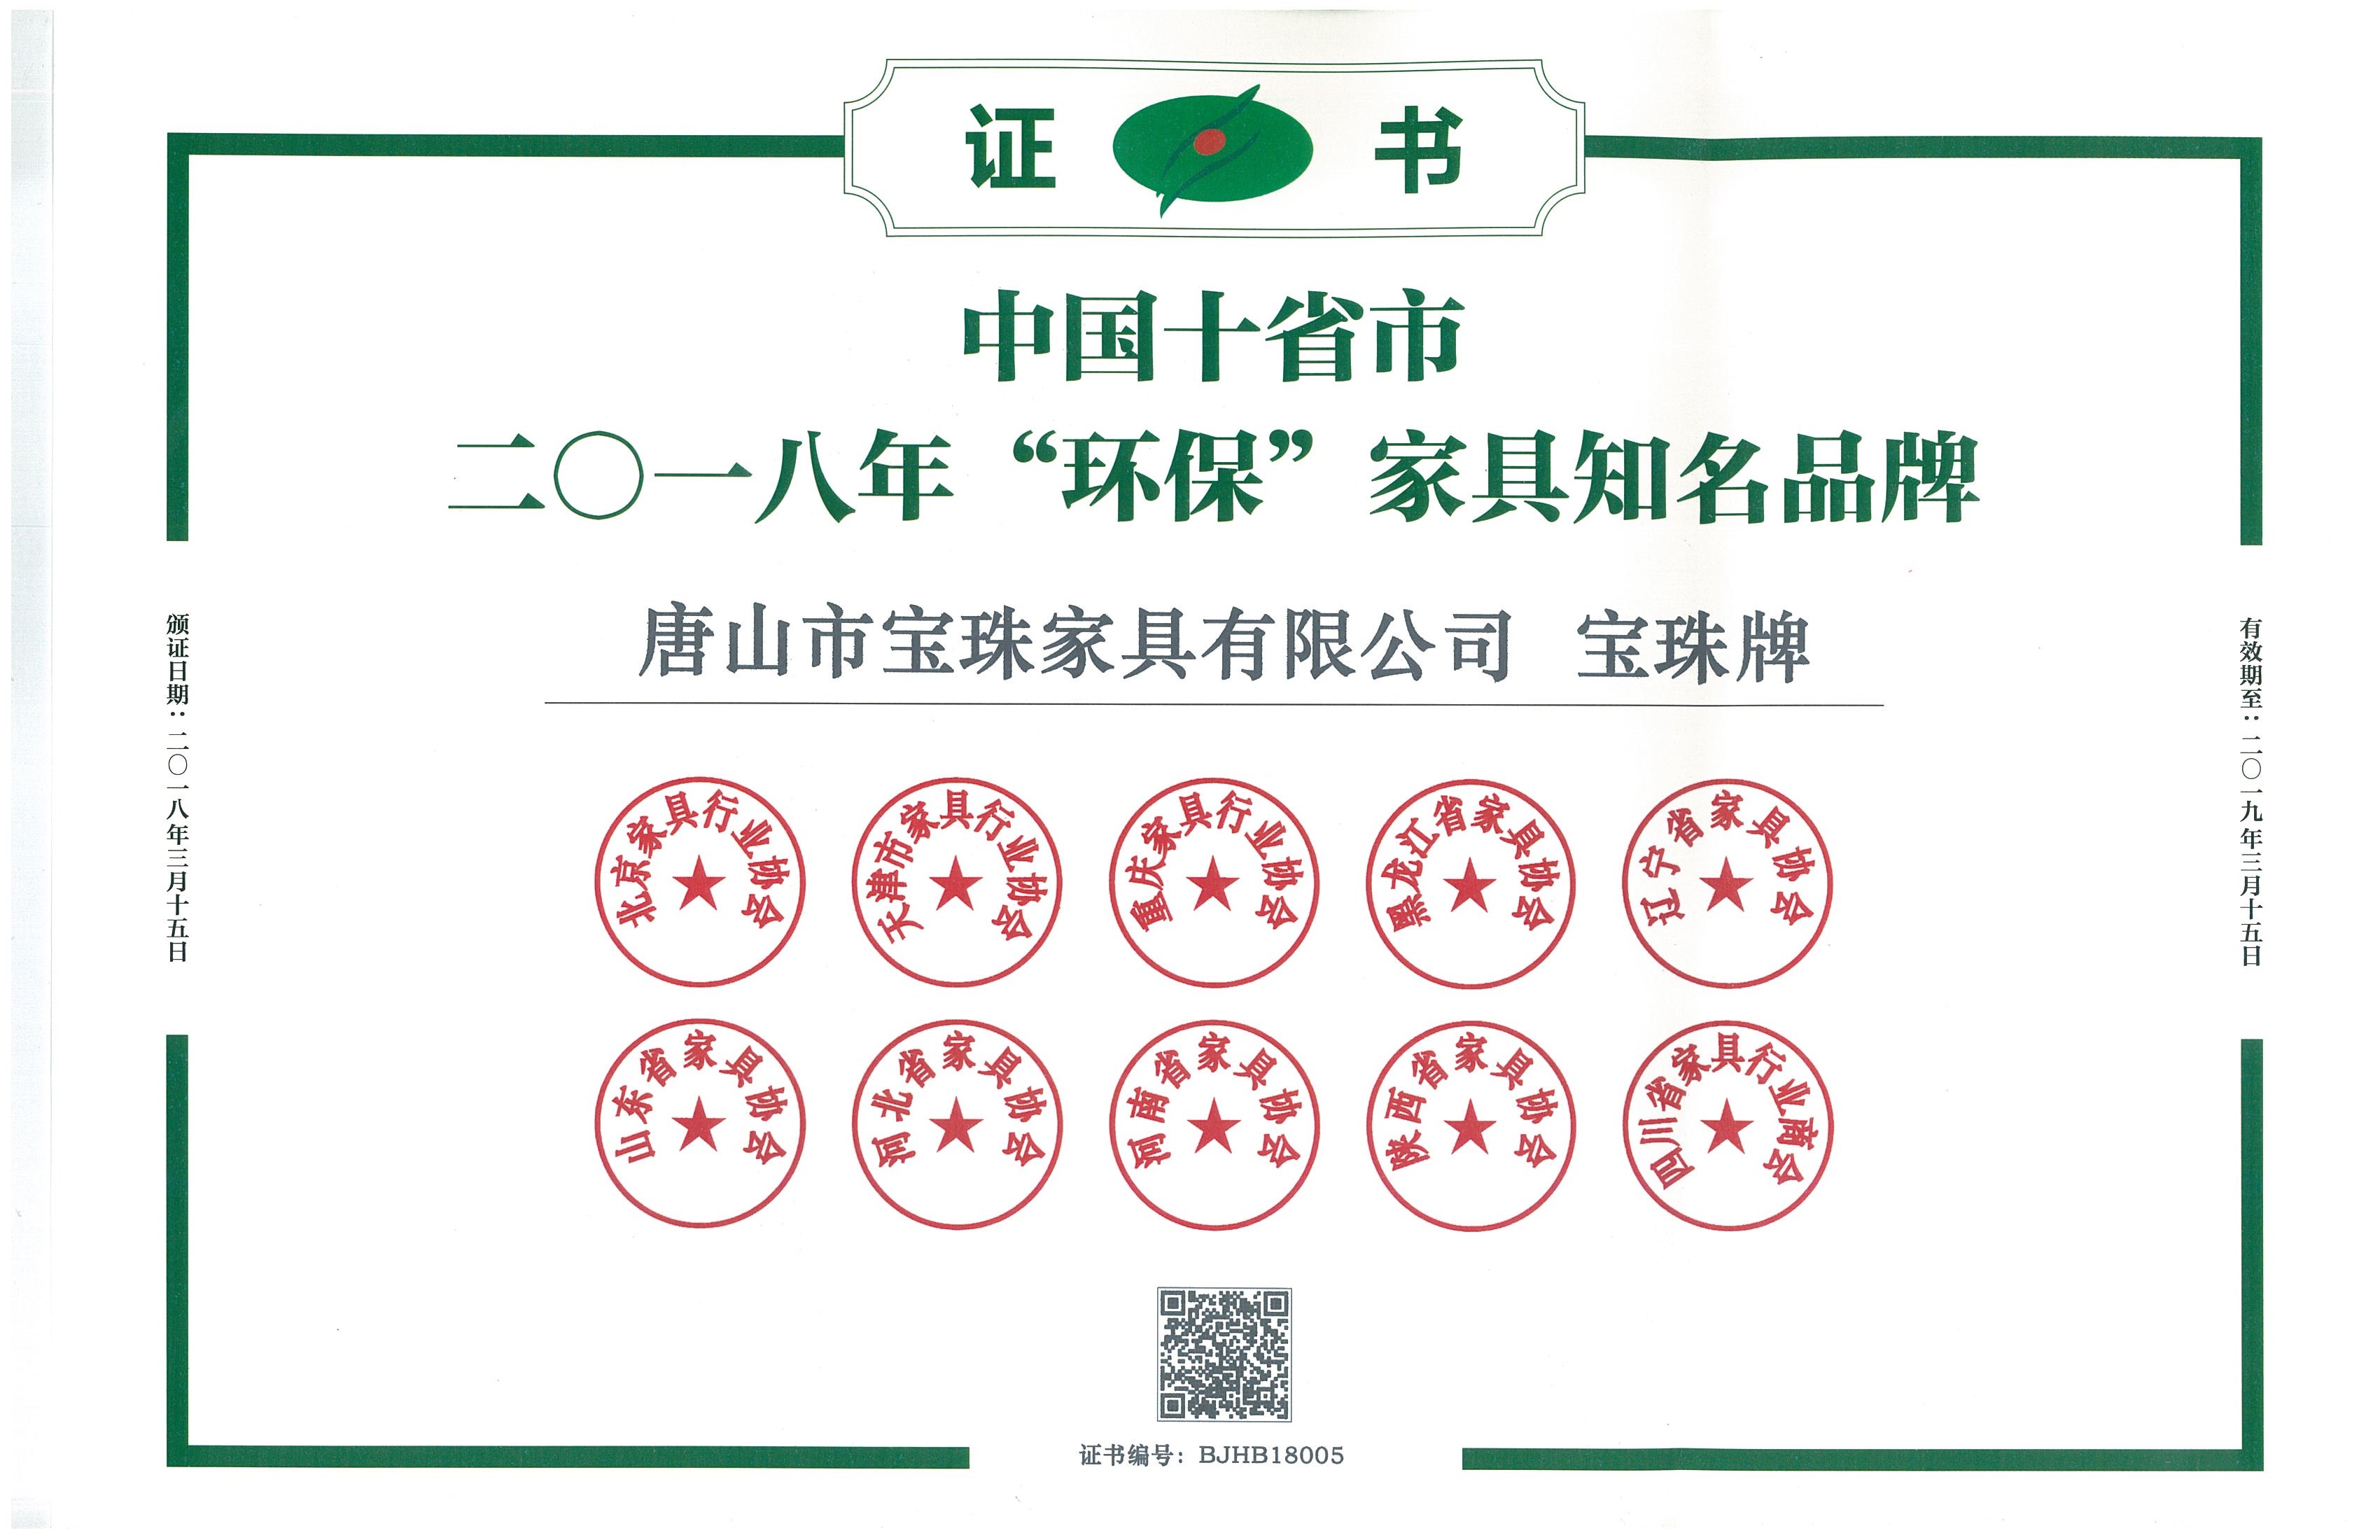 2018年宝珠公司荣获-中国十省市二0一八年“环保”家具知名品牌-证书，让绿色家具进万家一直是宝珠人的坚持的初心